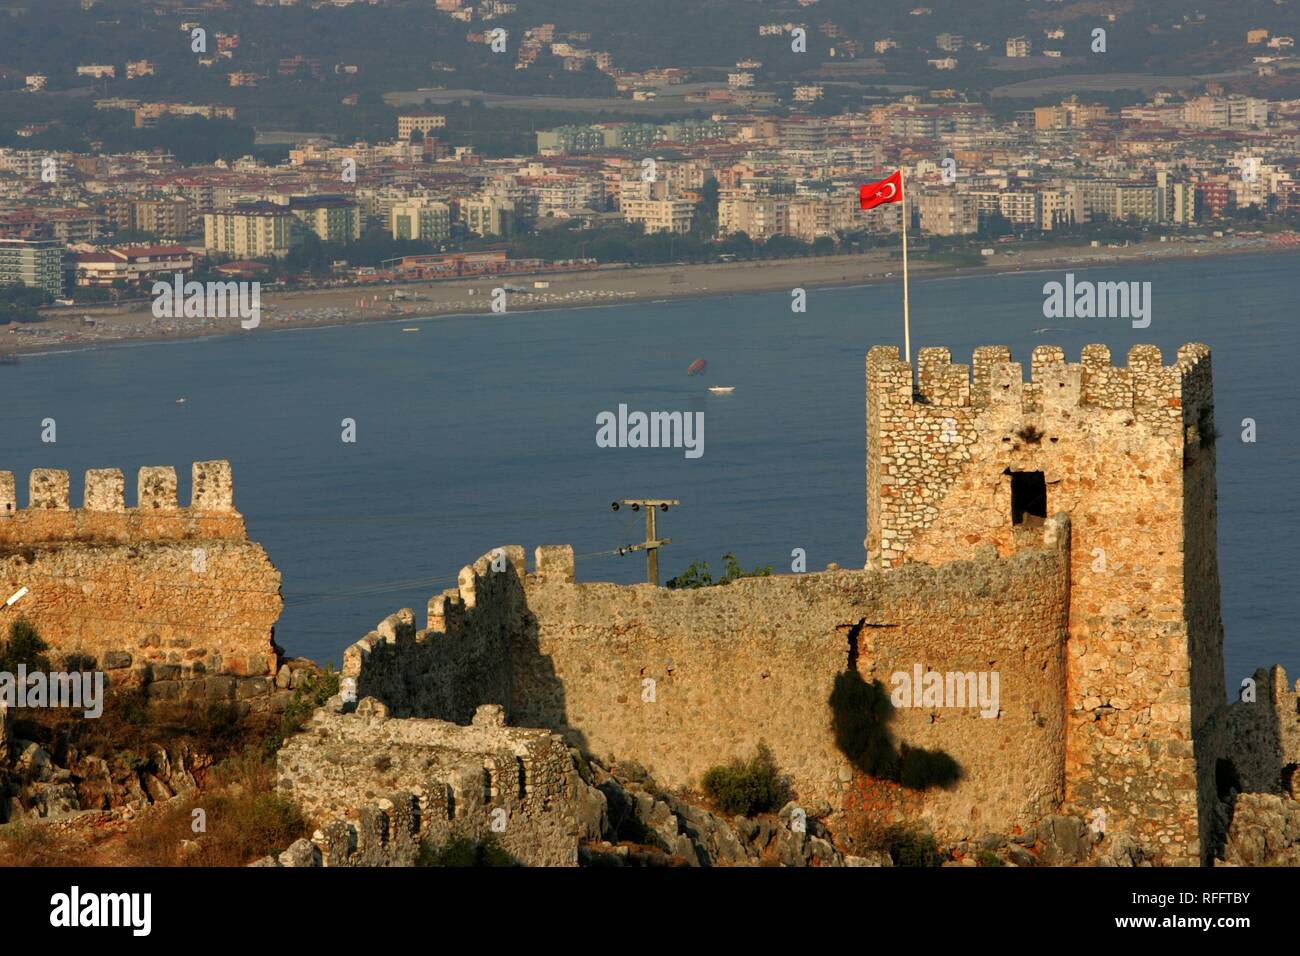 TUR, Turquie, Alanya : Riviera Turque. Murs de la forteresse de Kale Ic au-dessus de la ville Banque D'Images